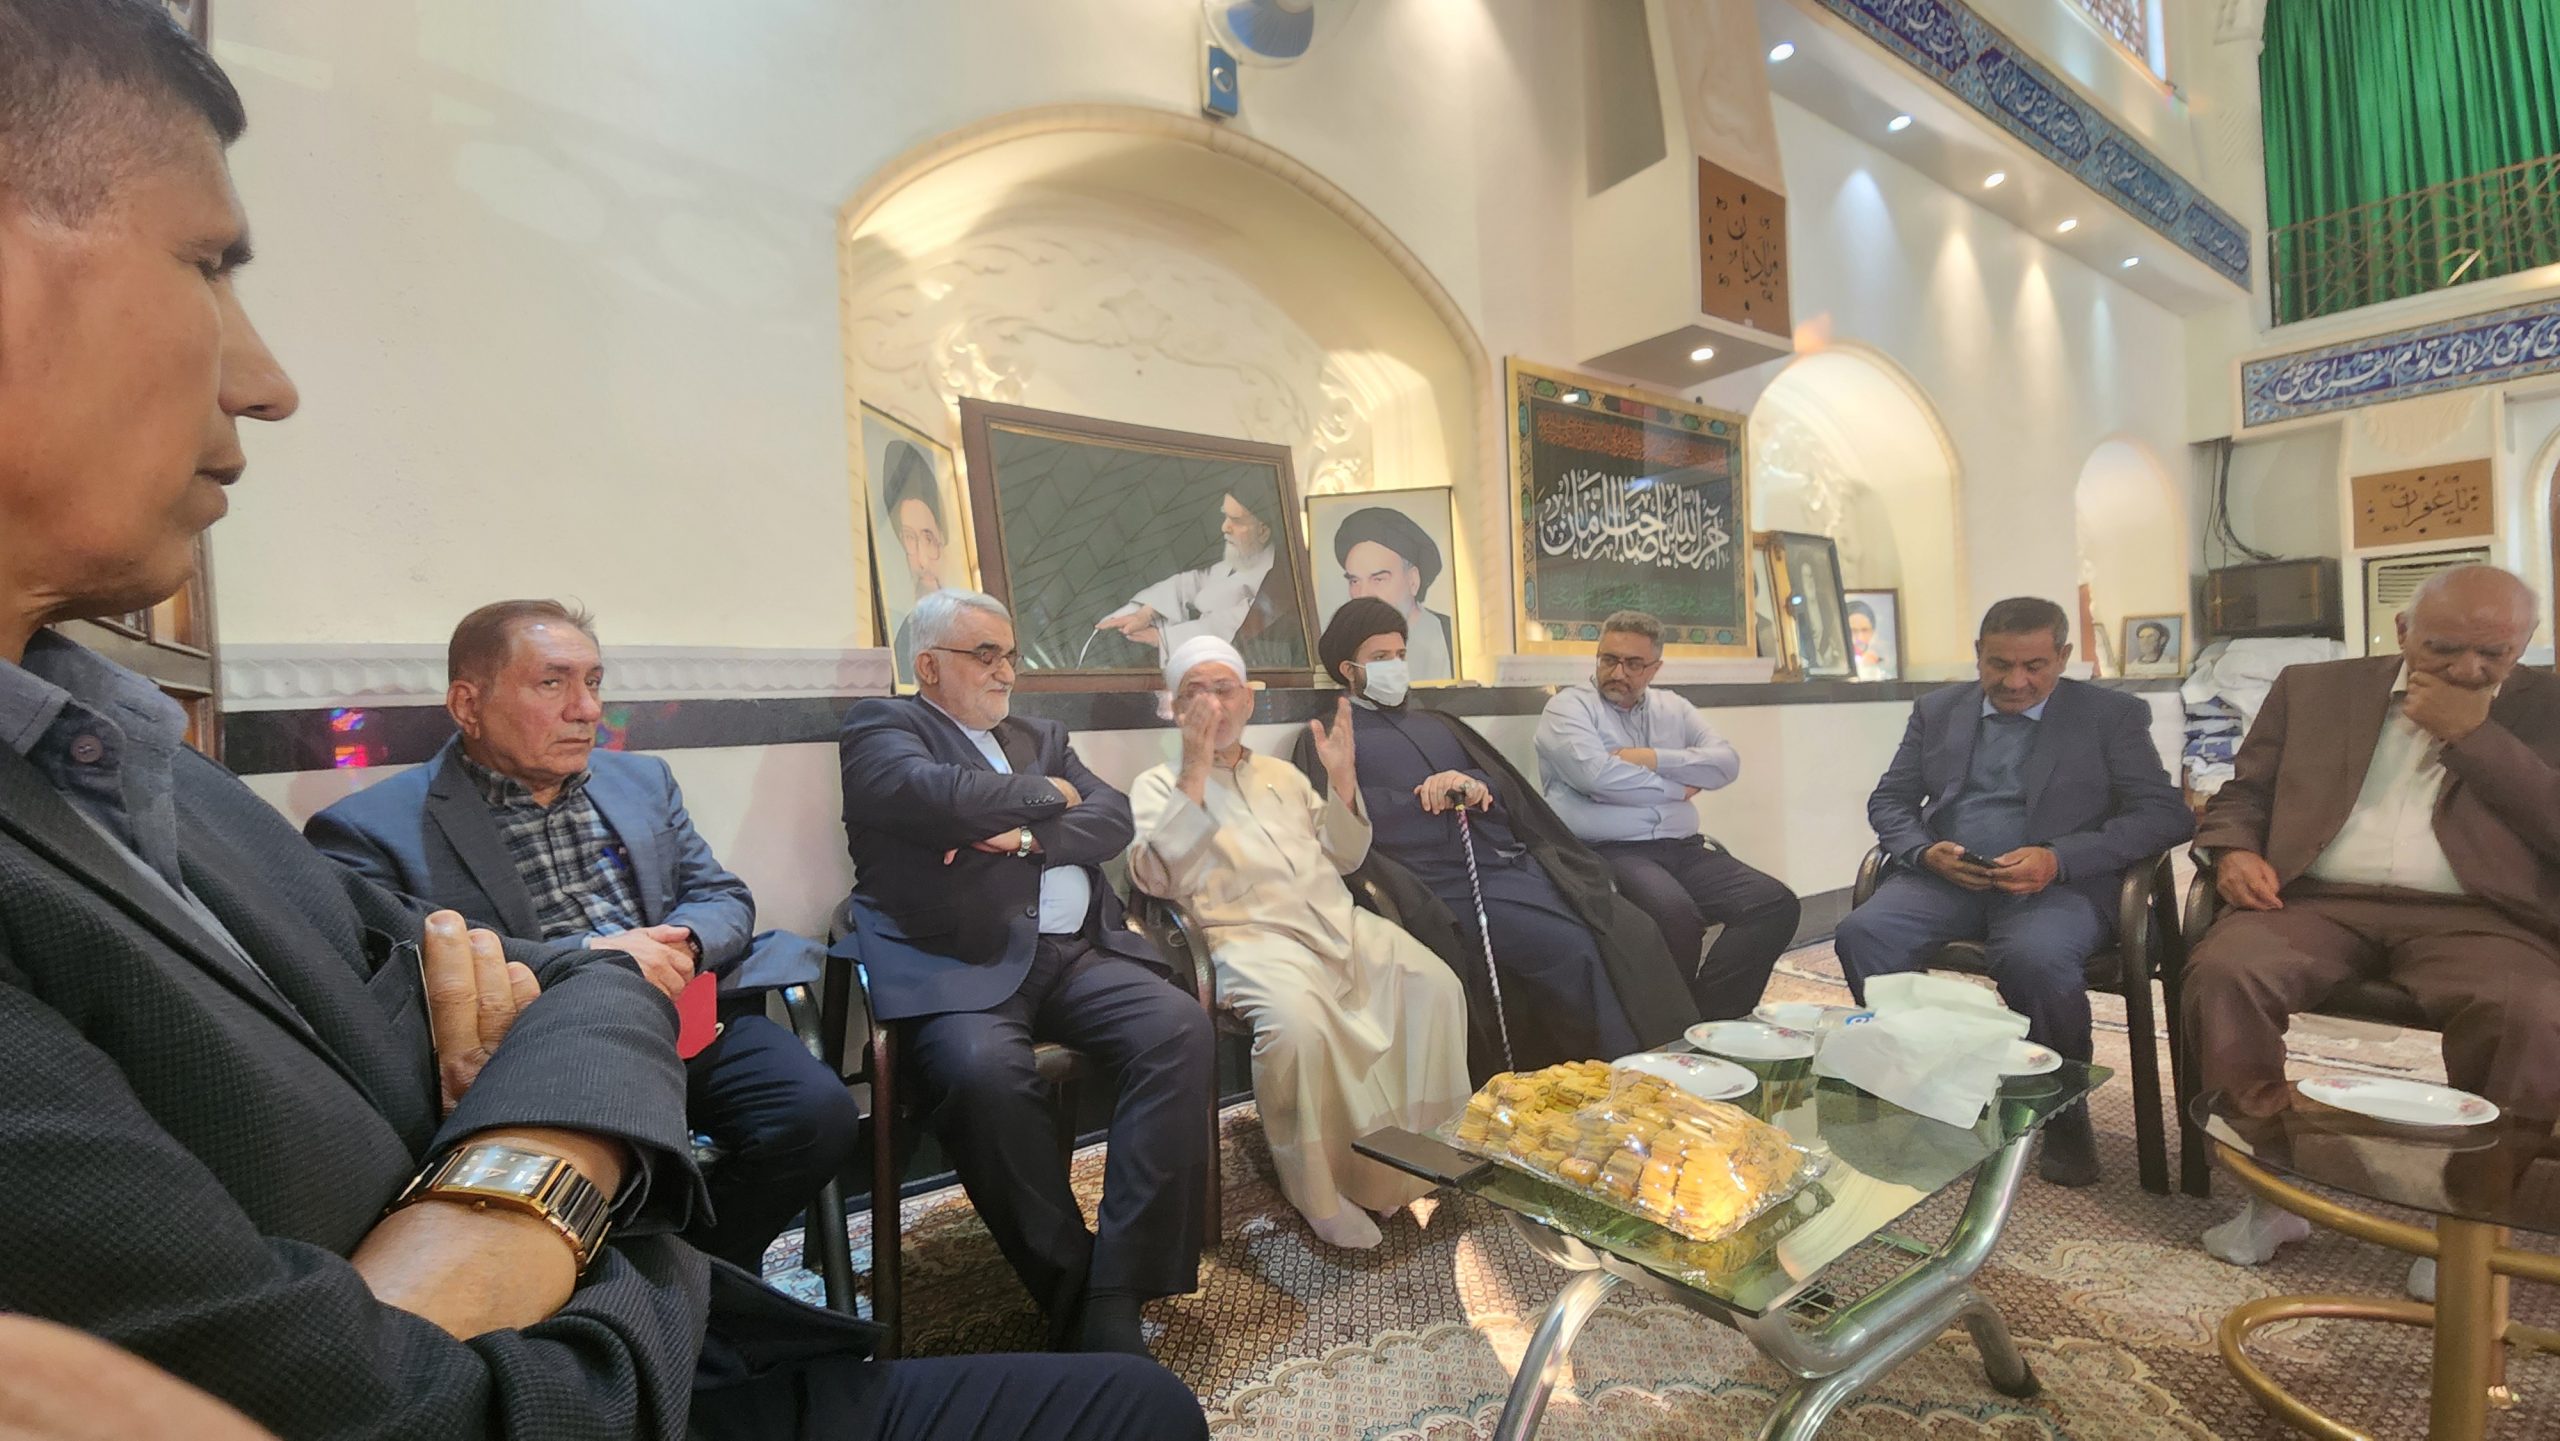 بروجردی در گفتگو با جمعی از شهروندان اوز بر ضرورت تحول اقتصادی پنج شهرستان تاکید کرد